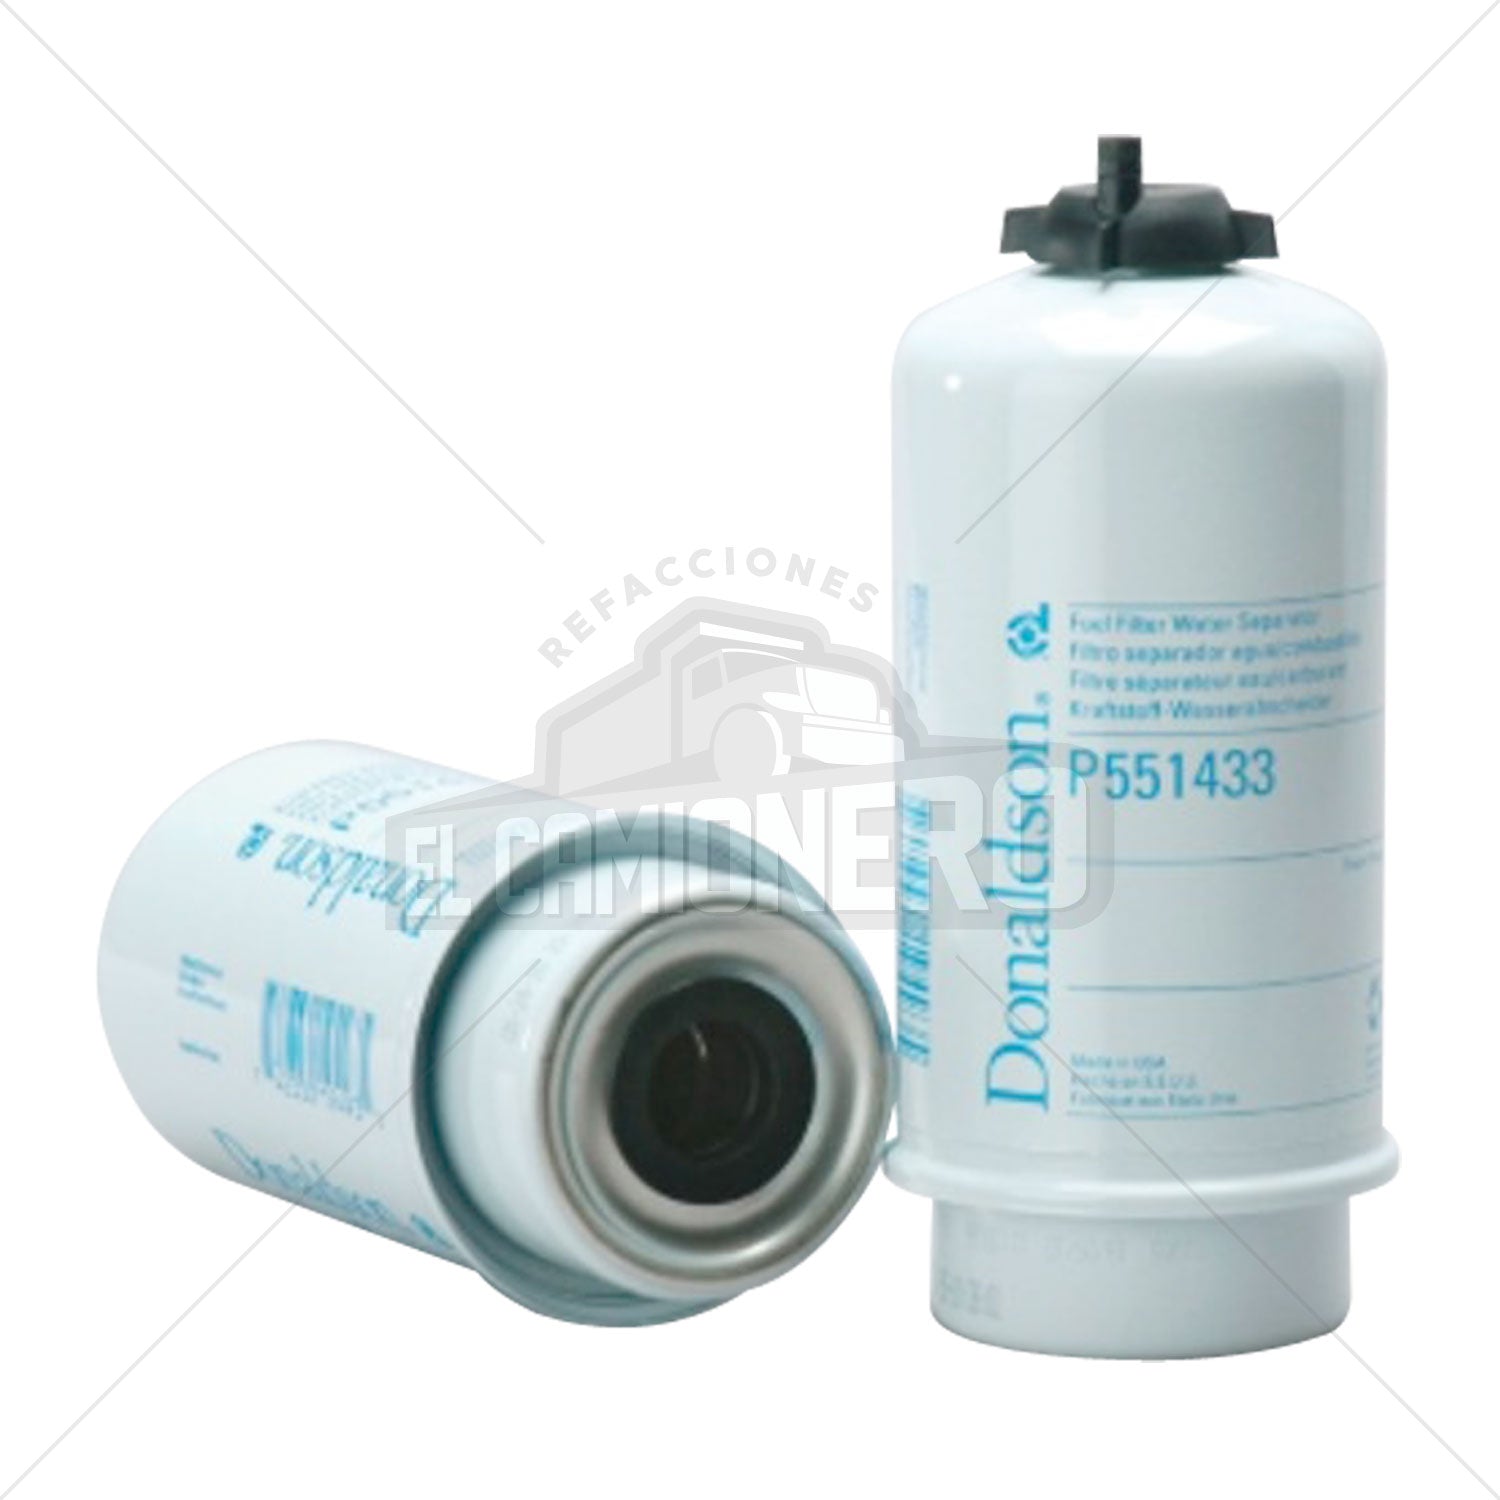 Filtro de combustible separador de agua Donaldson P551433